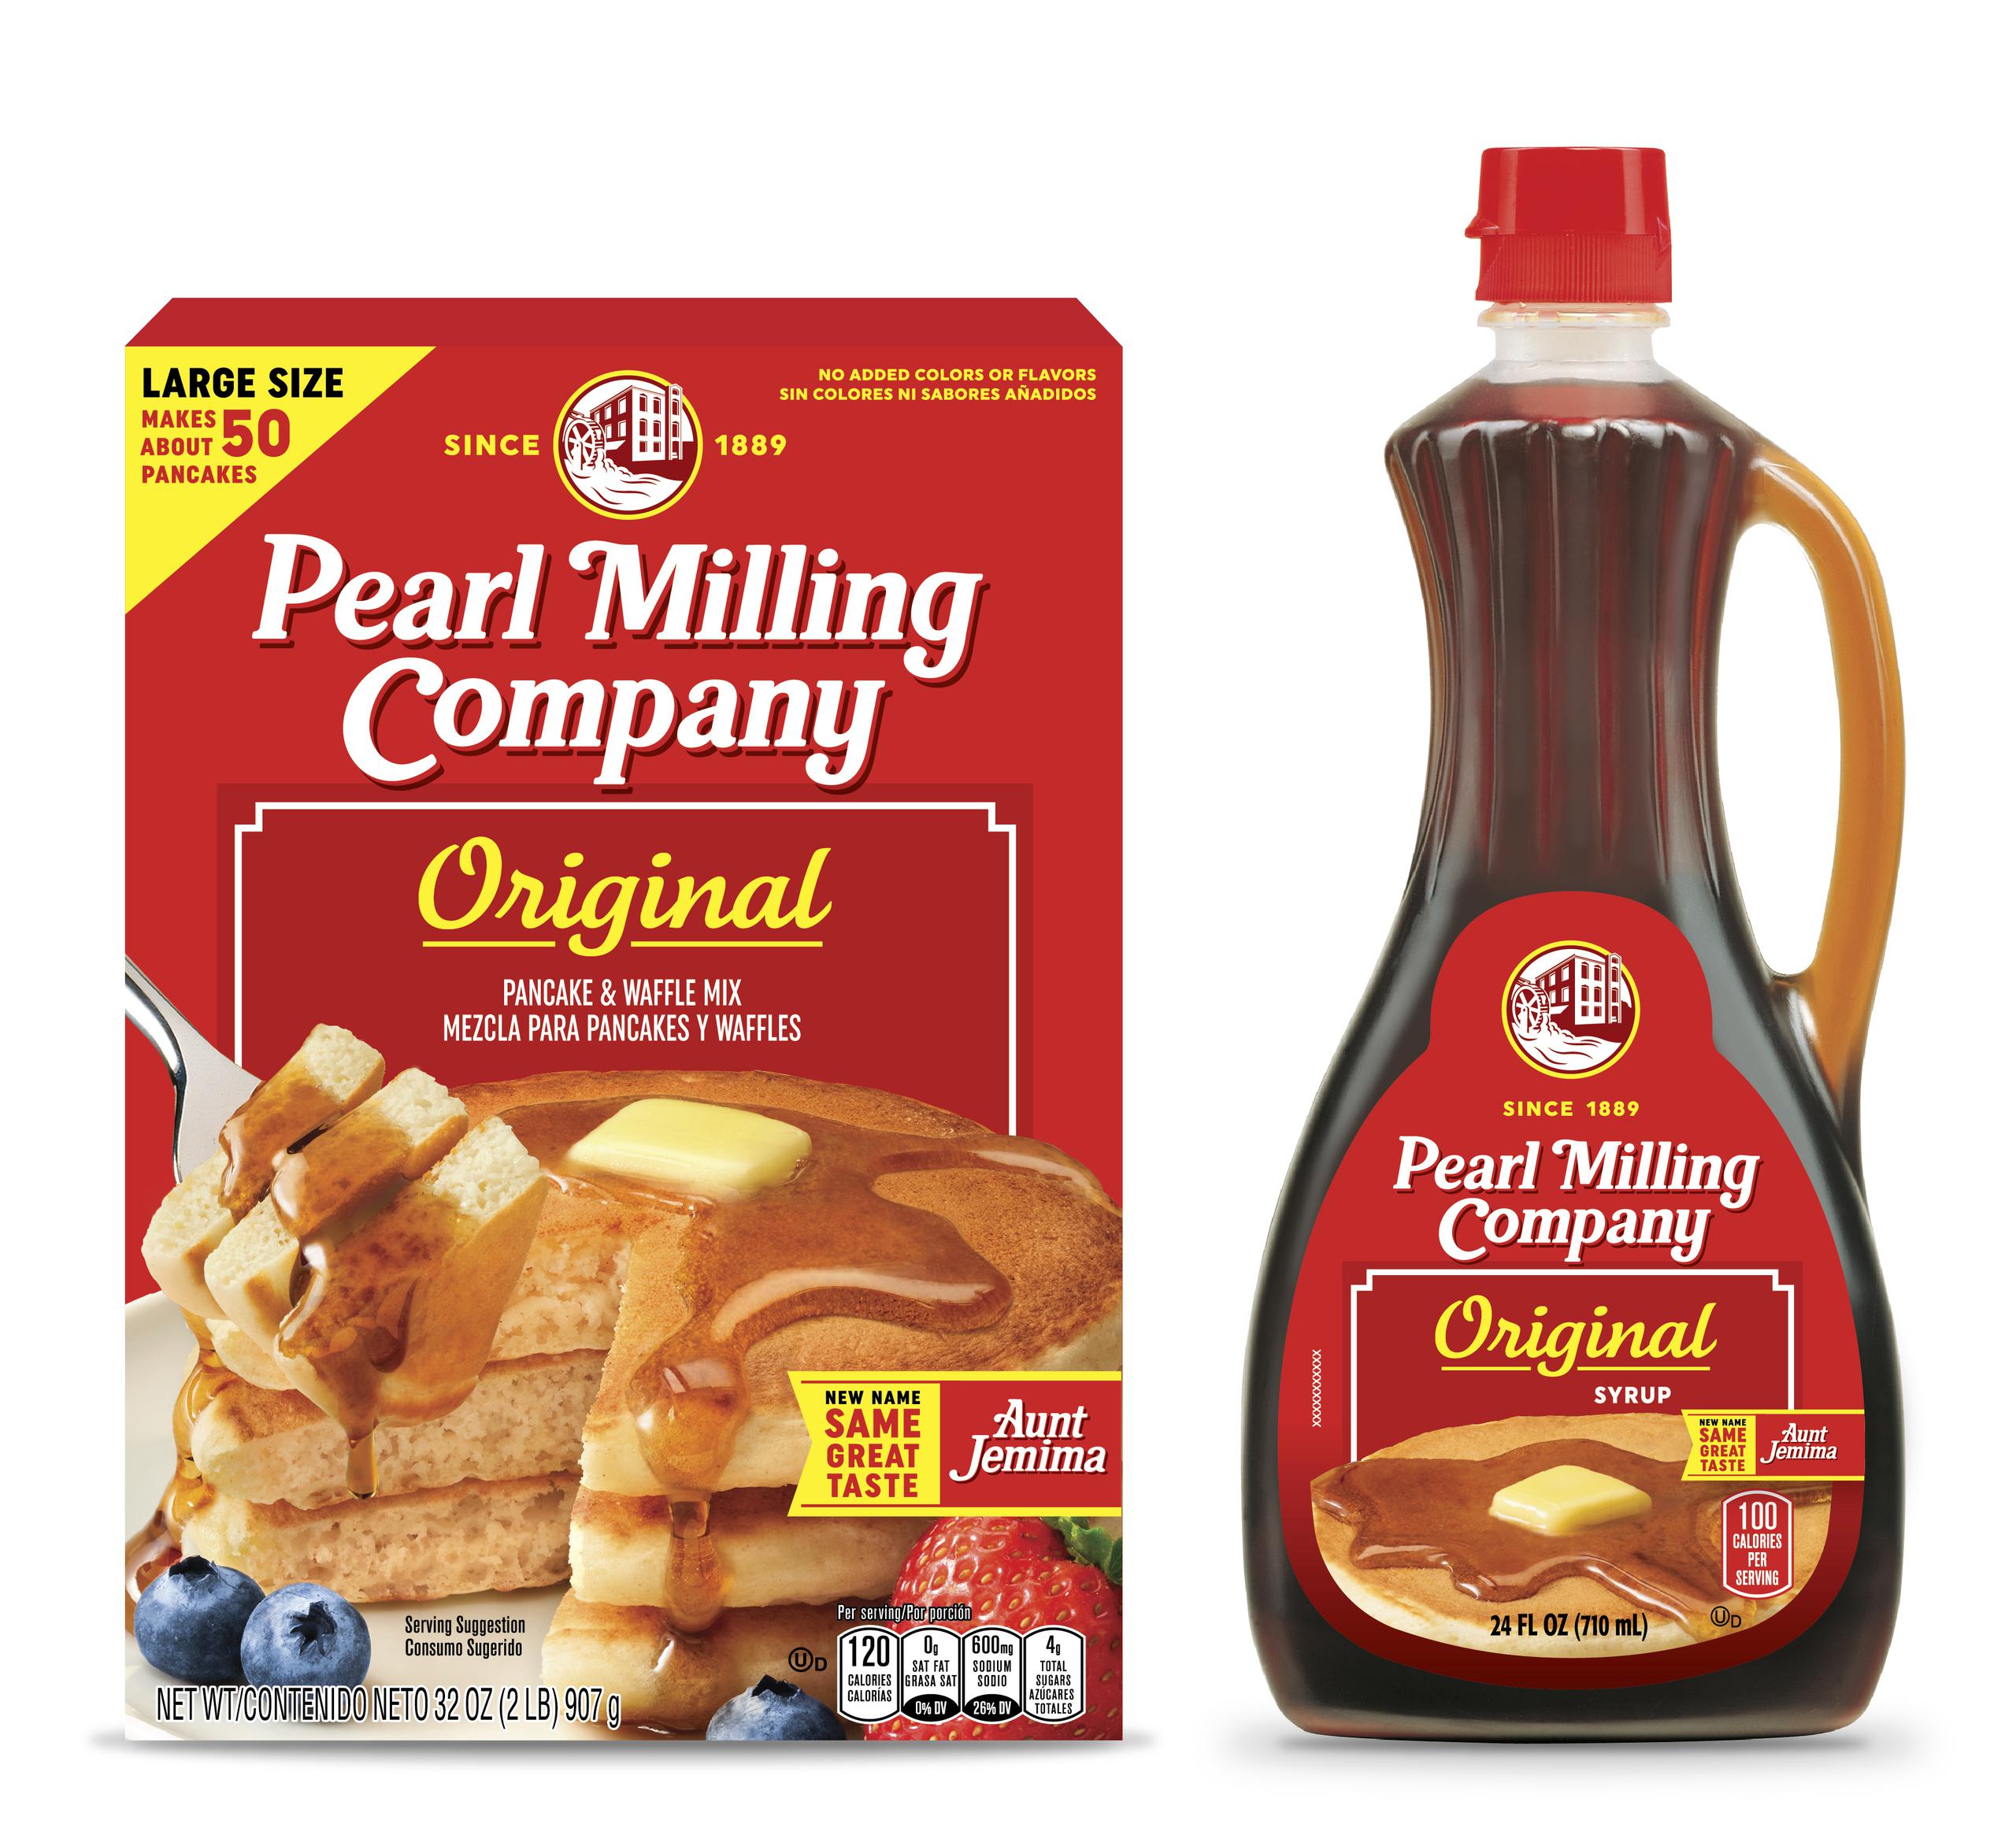 En esta imagen cortesía de PepsiCo, Inc., se ve la mezcla para panqueques y el jarabe Pearl Milling Company de Quaker Oats, conocido previmanete como la marca de Aunt Jemima.